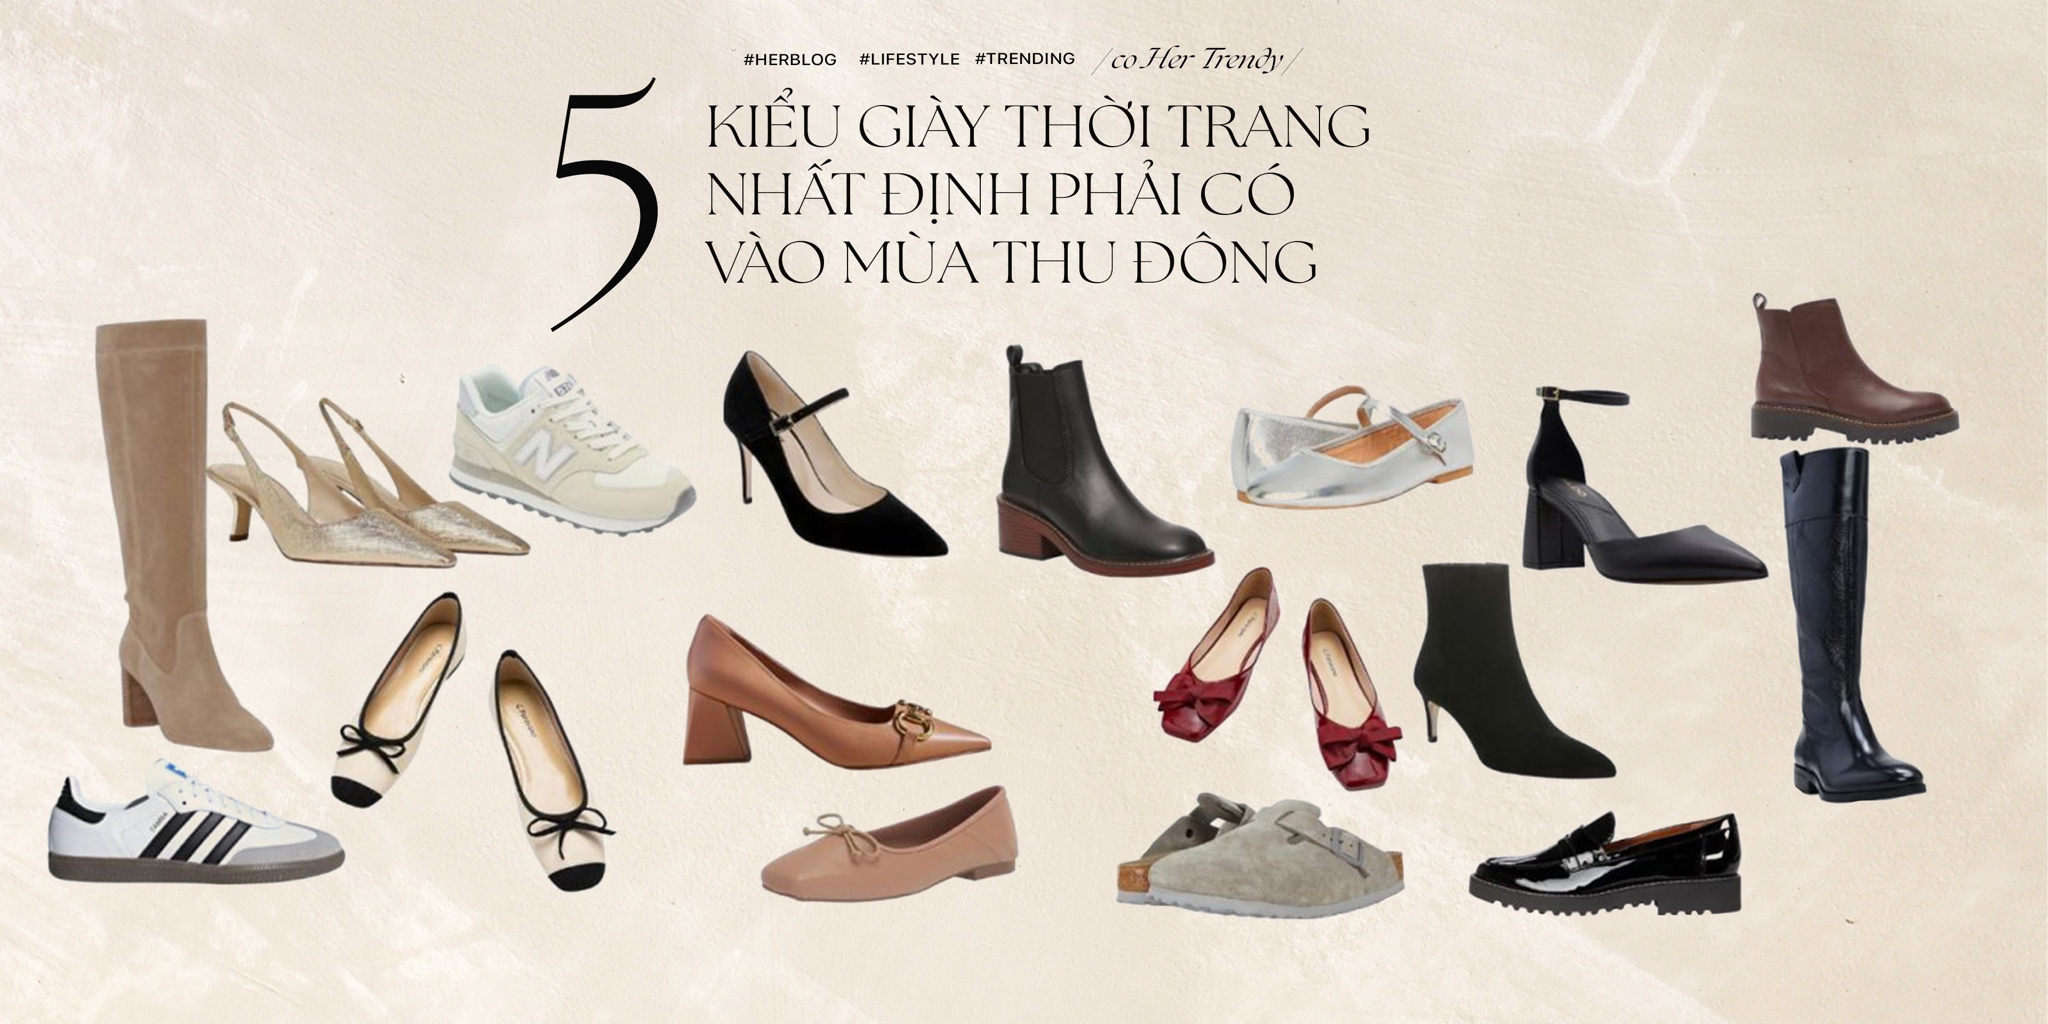 [CÔ HER TRENDY] 5 kiểu giày thời trang nhất định phải có vào mùa thu đông